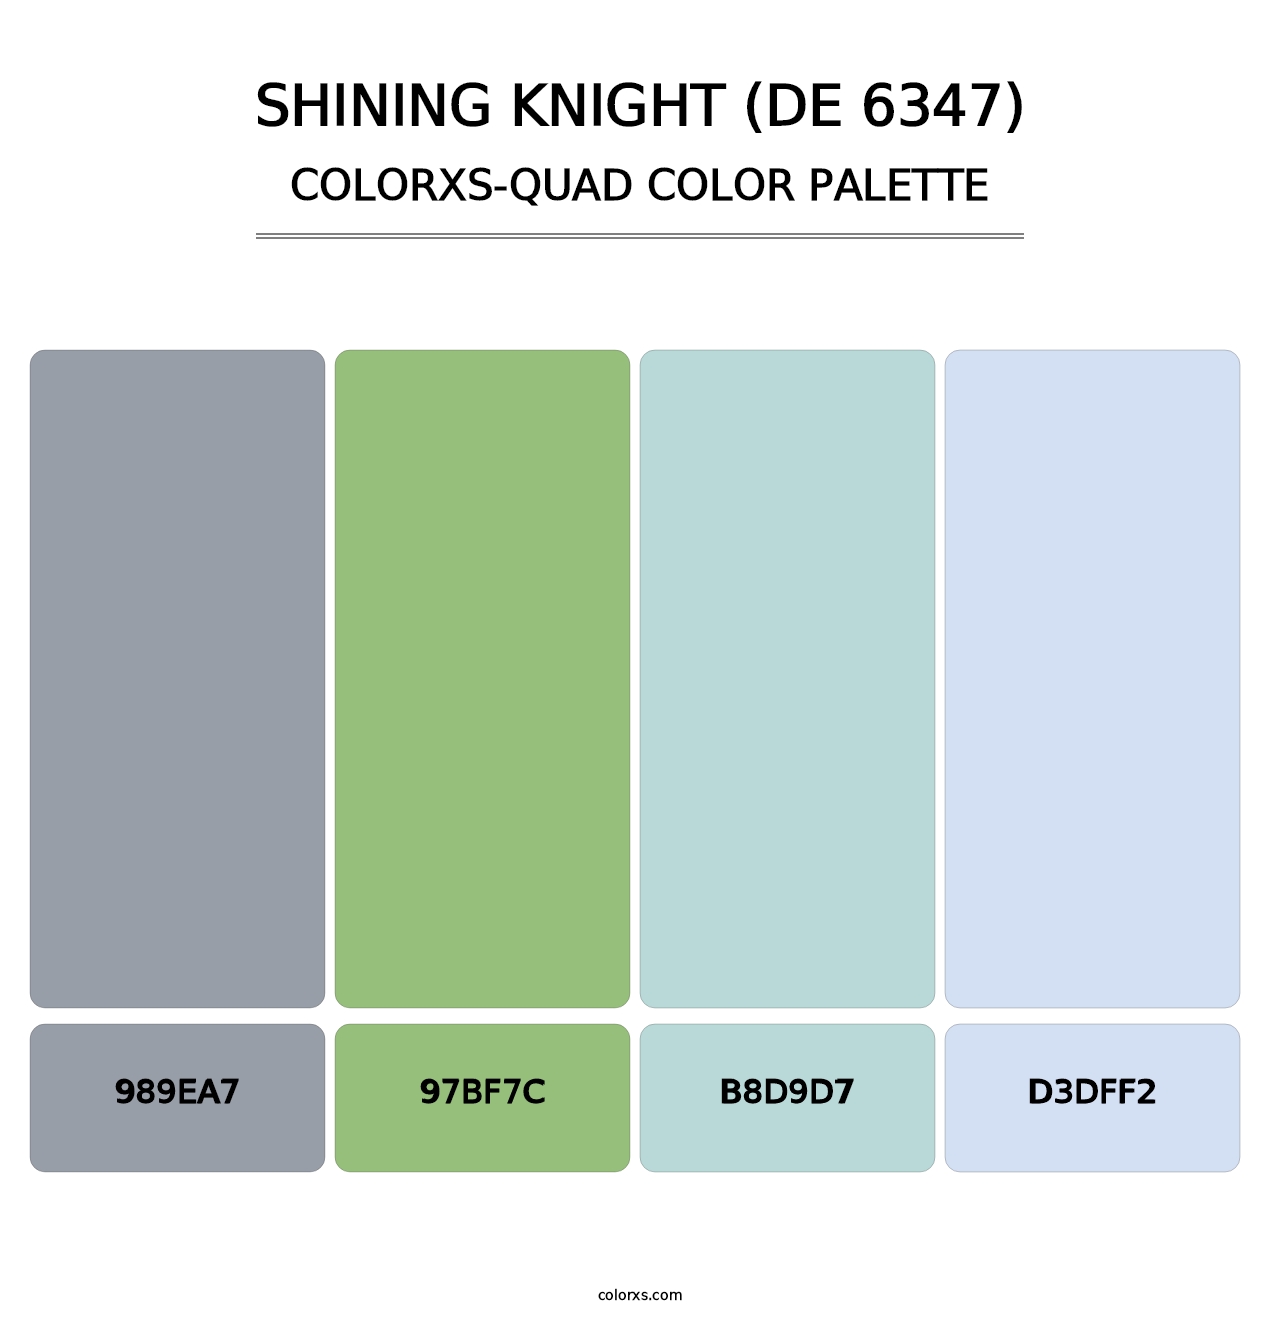 Shining Knight (DE 6347) - Colorxs Quad Palette